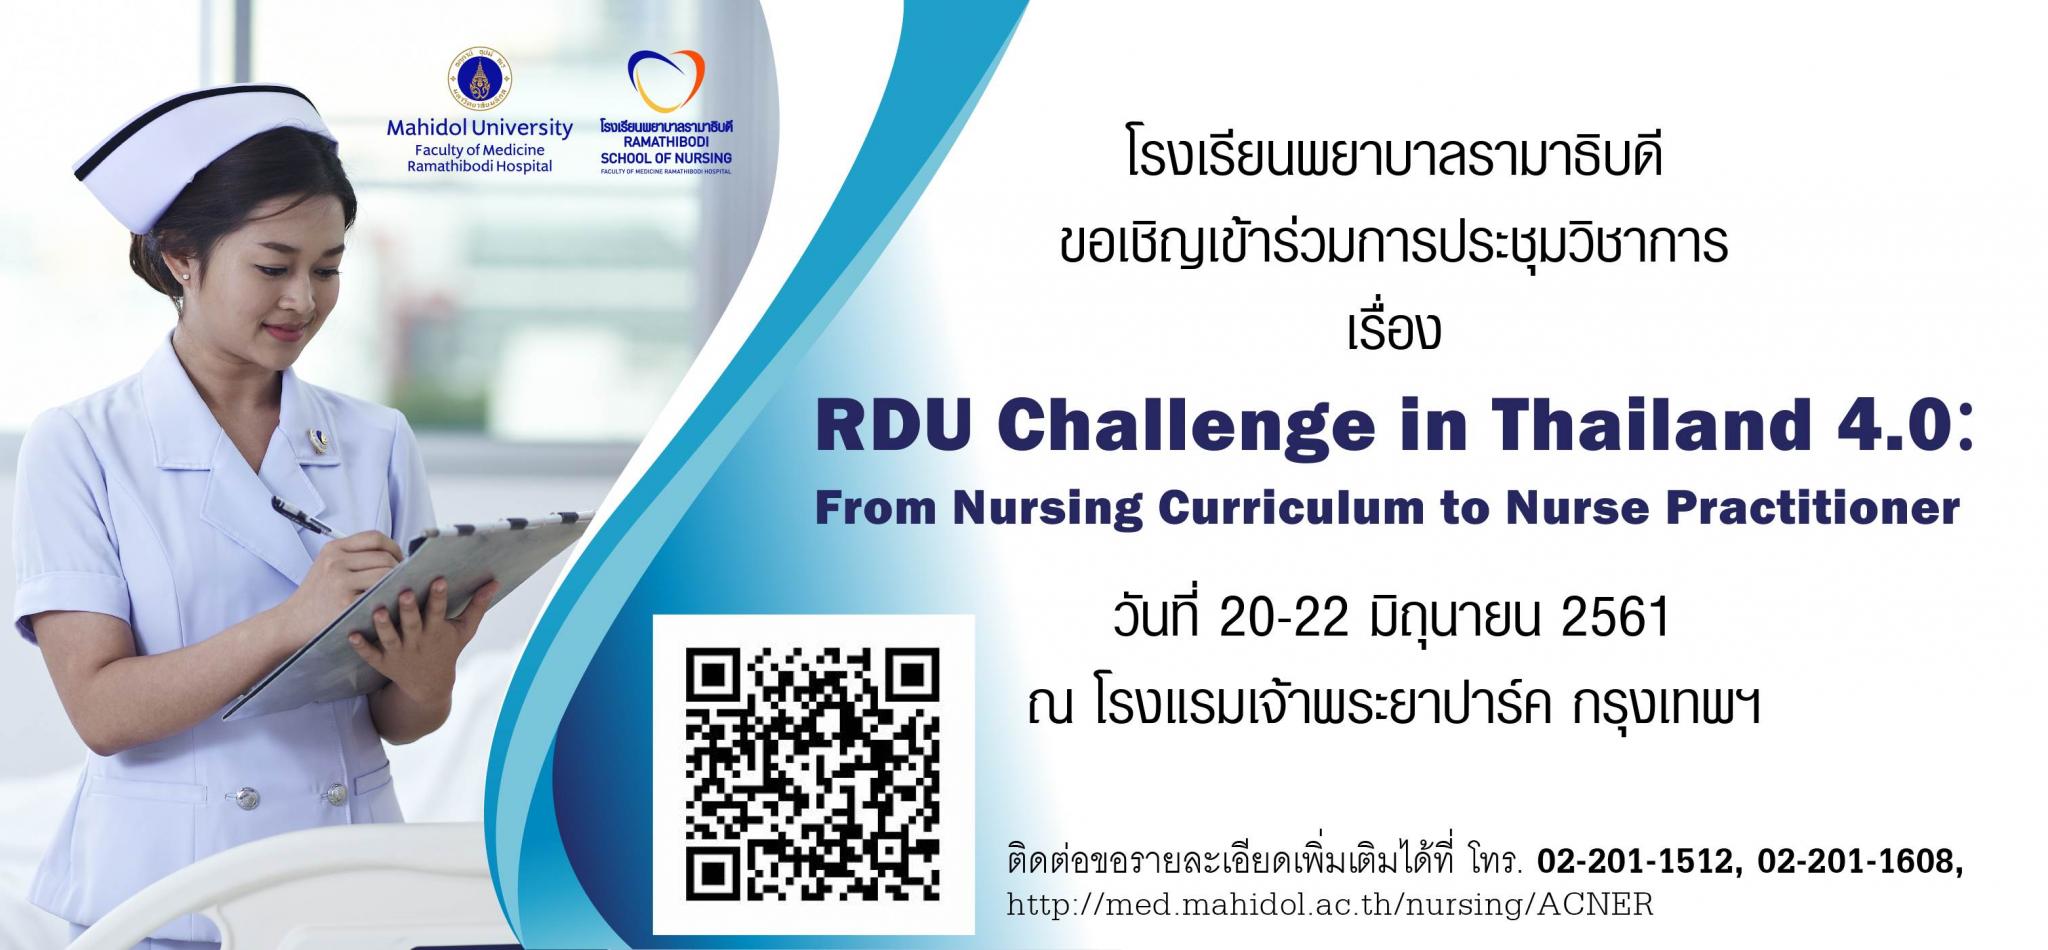 ขอเชิญเข้าร่วมการประชุมวิชาการ เรื่อง RDU Challenge in Thailand 4.0: From Nursing Curriculum to Nurse Practitioner